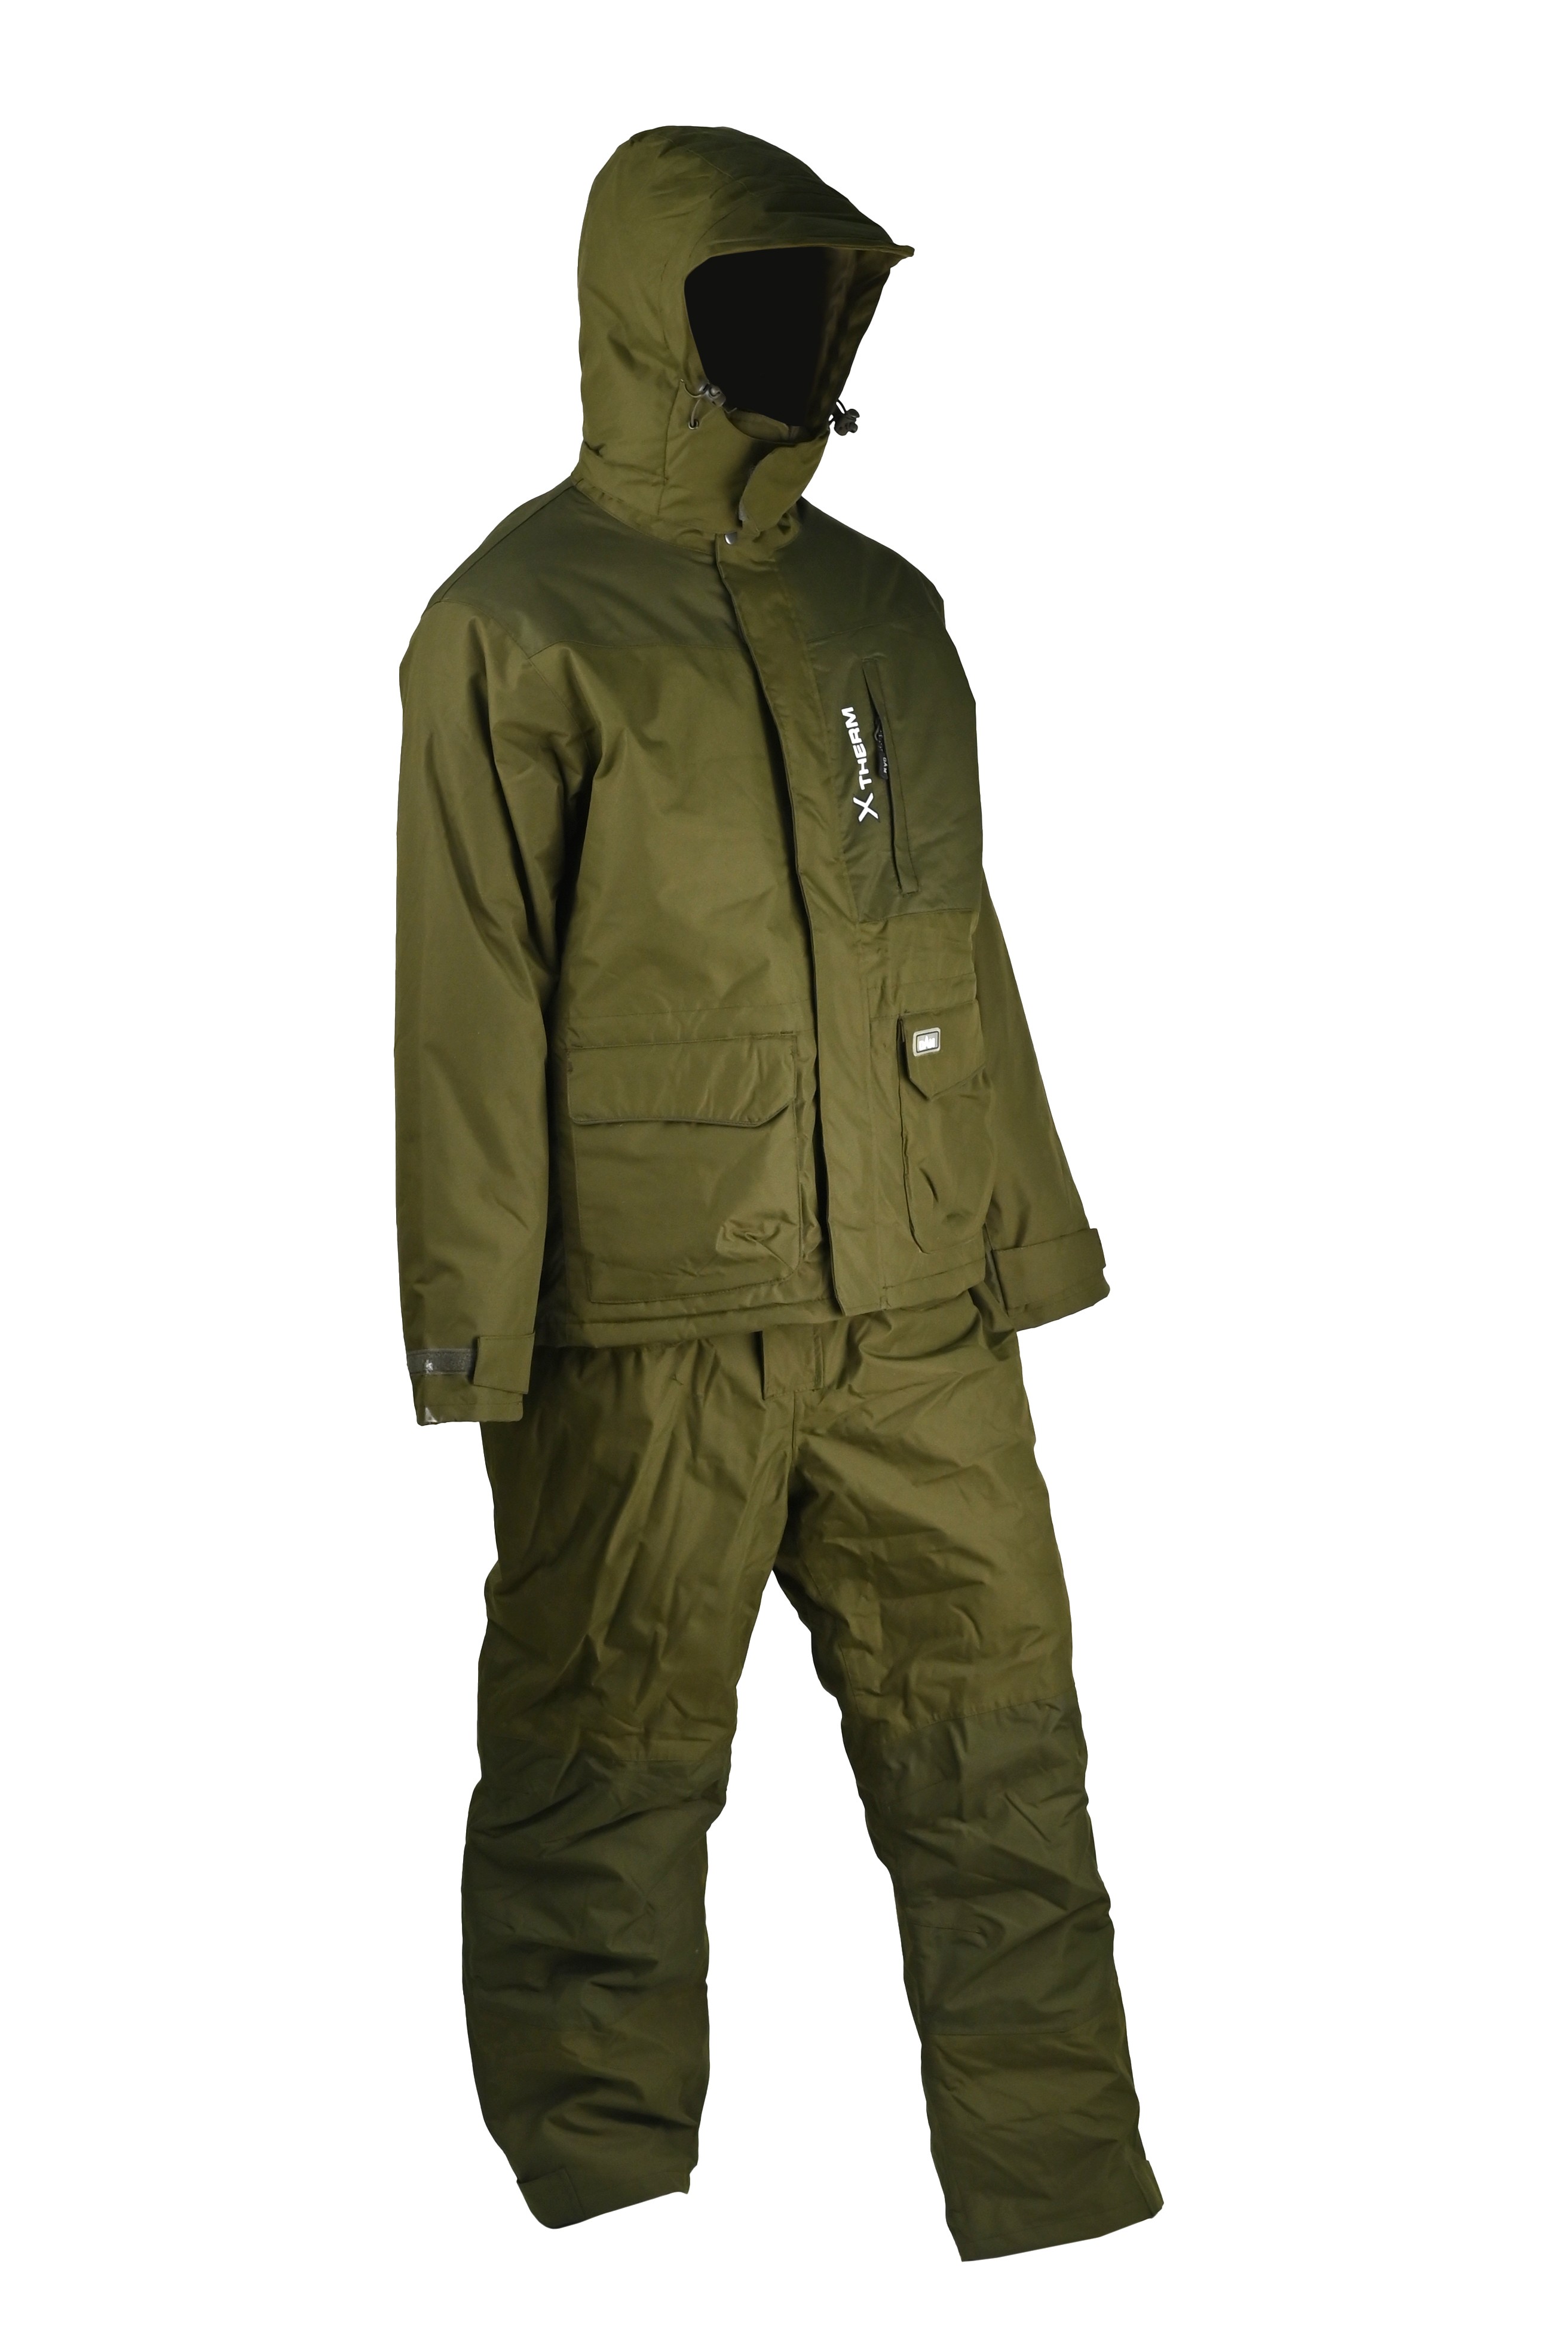 Костюм DAM Xtherm Winter Suit green р.L - фото 1